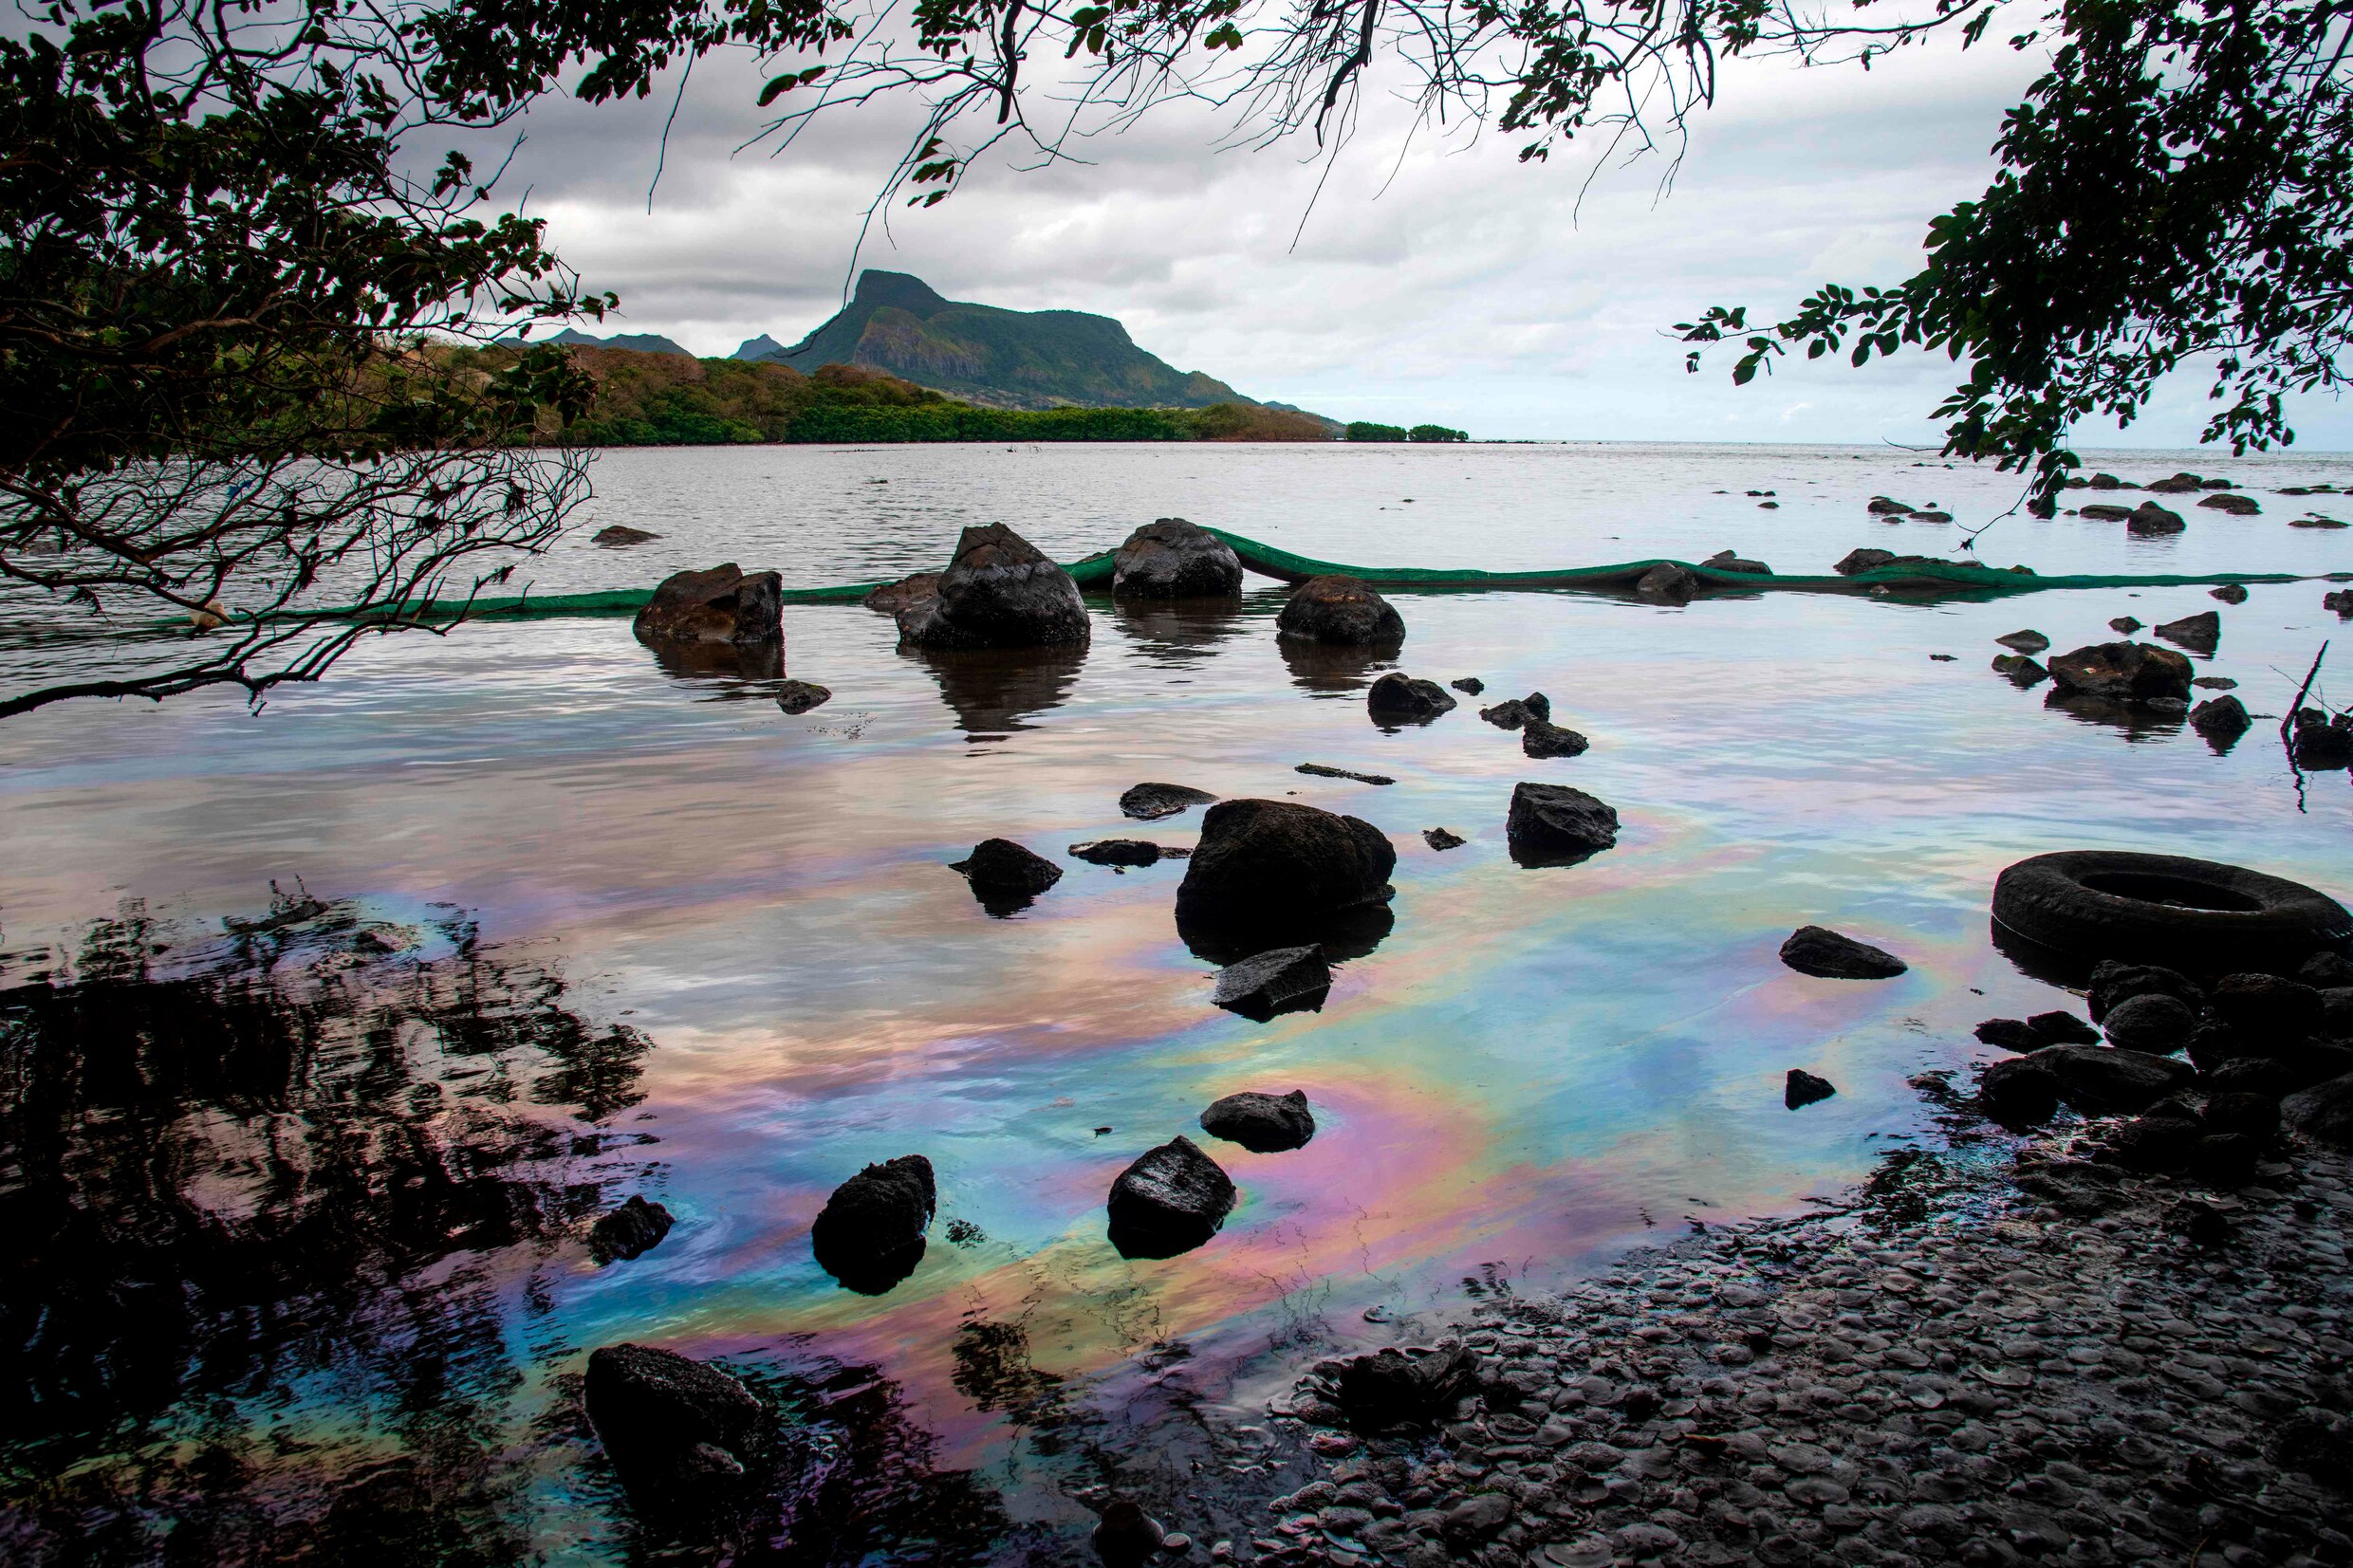 Olietanker die vastliep voor kust Mauritius en milieuramp veroorzaakte in tweeën gebroken